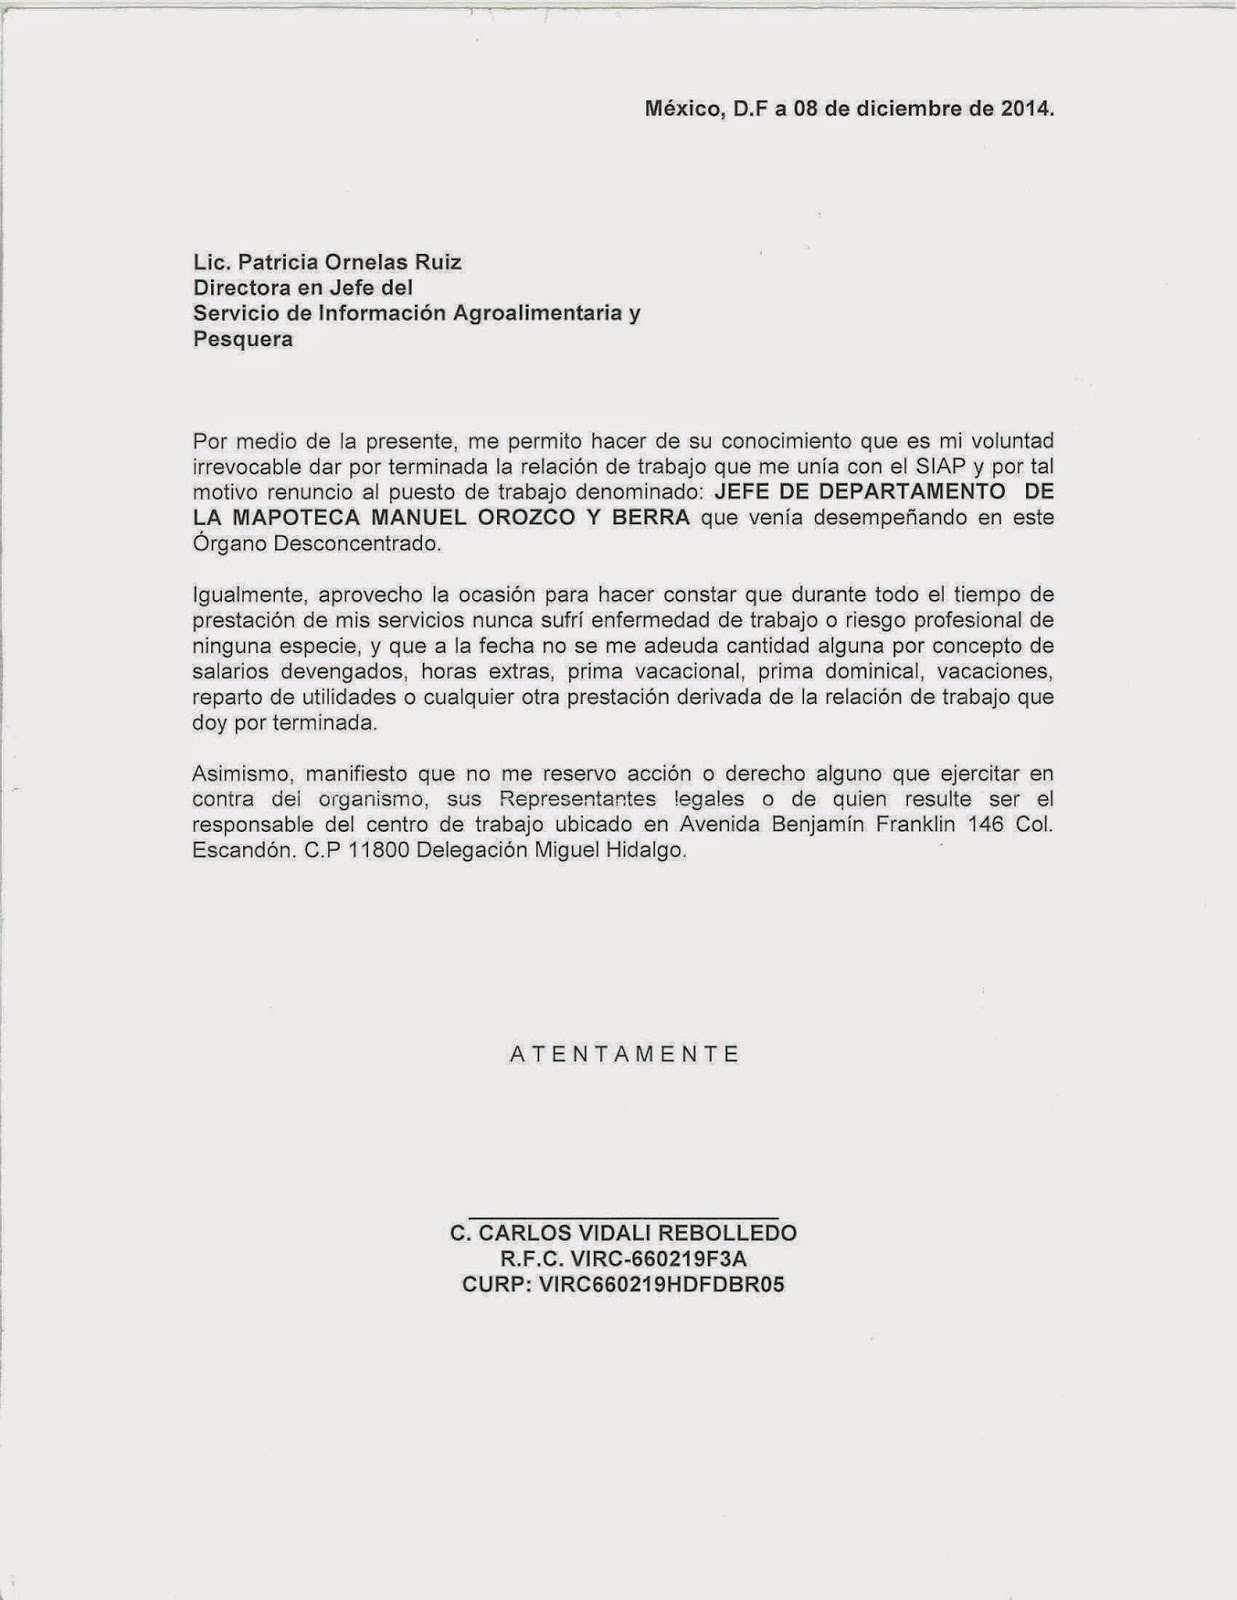 Mapoteca Manuel Orozco y Berra: Carta de renuncia que se 